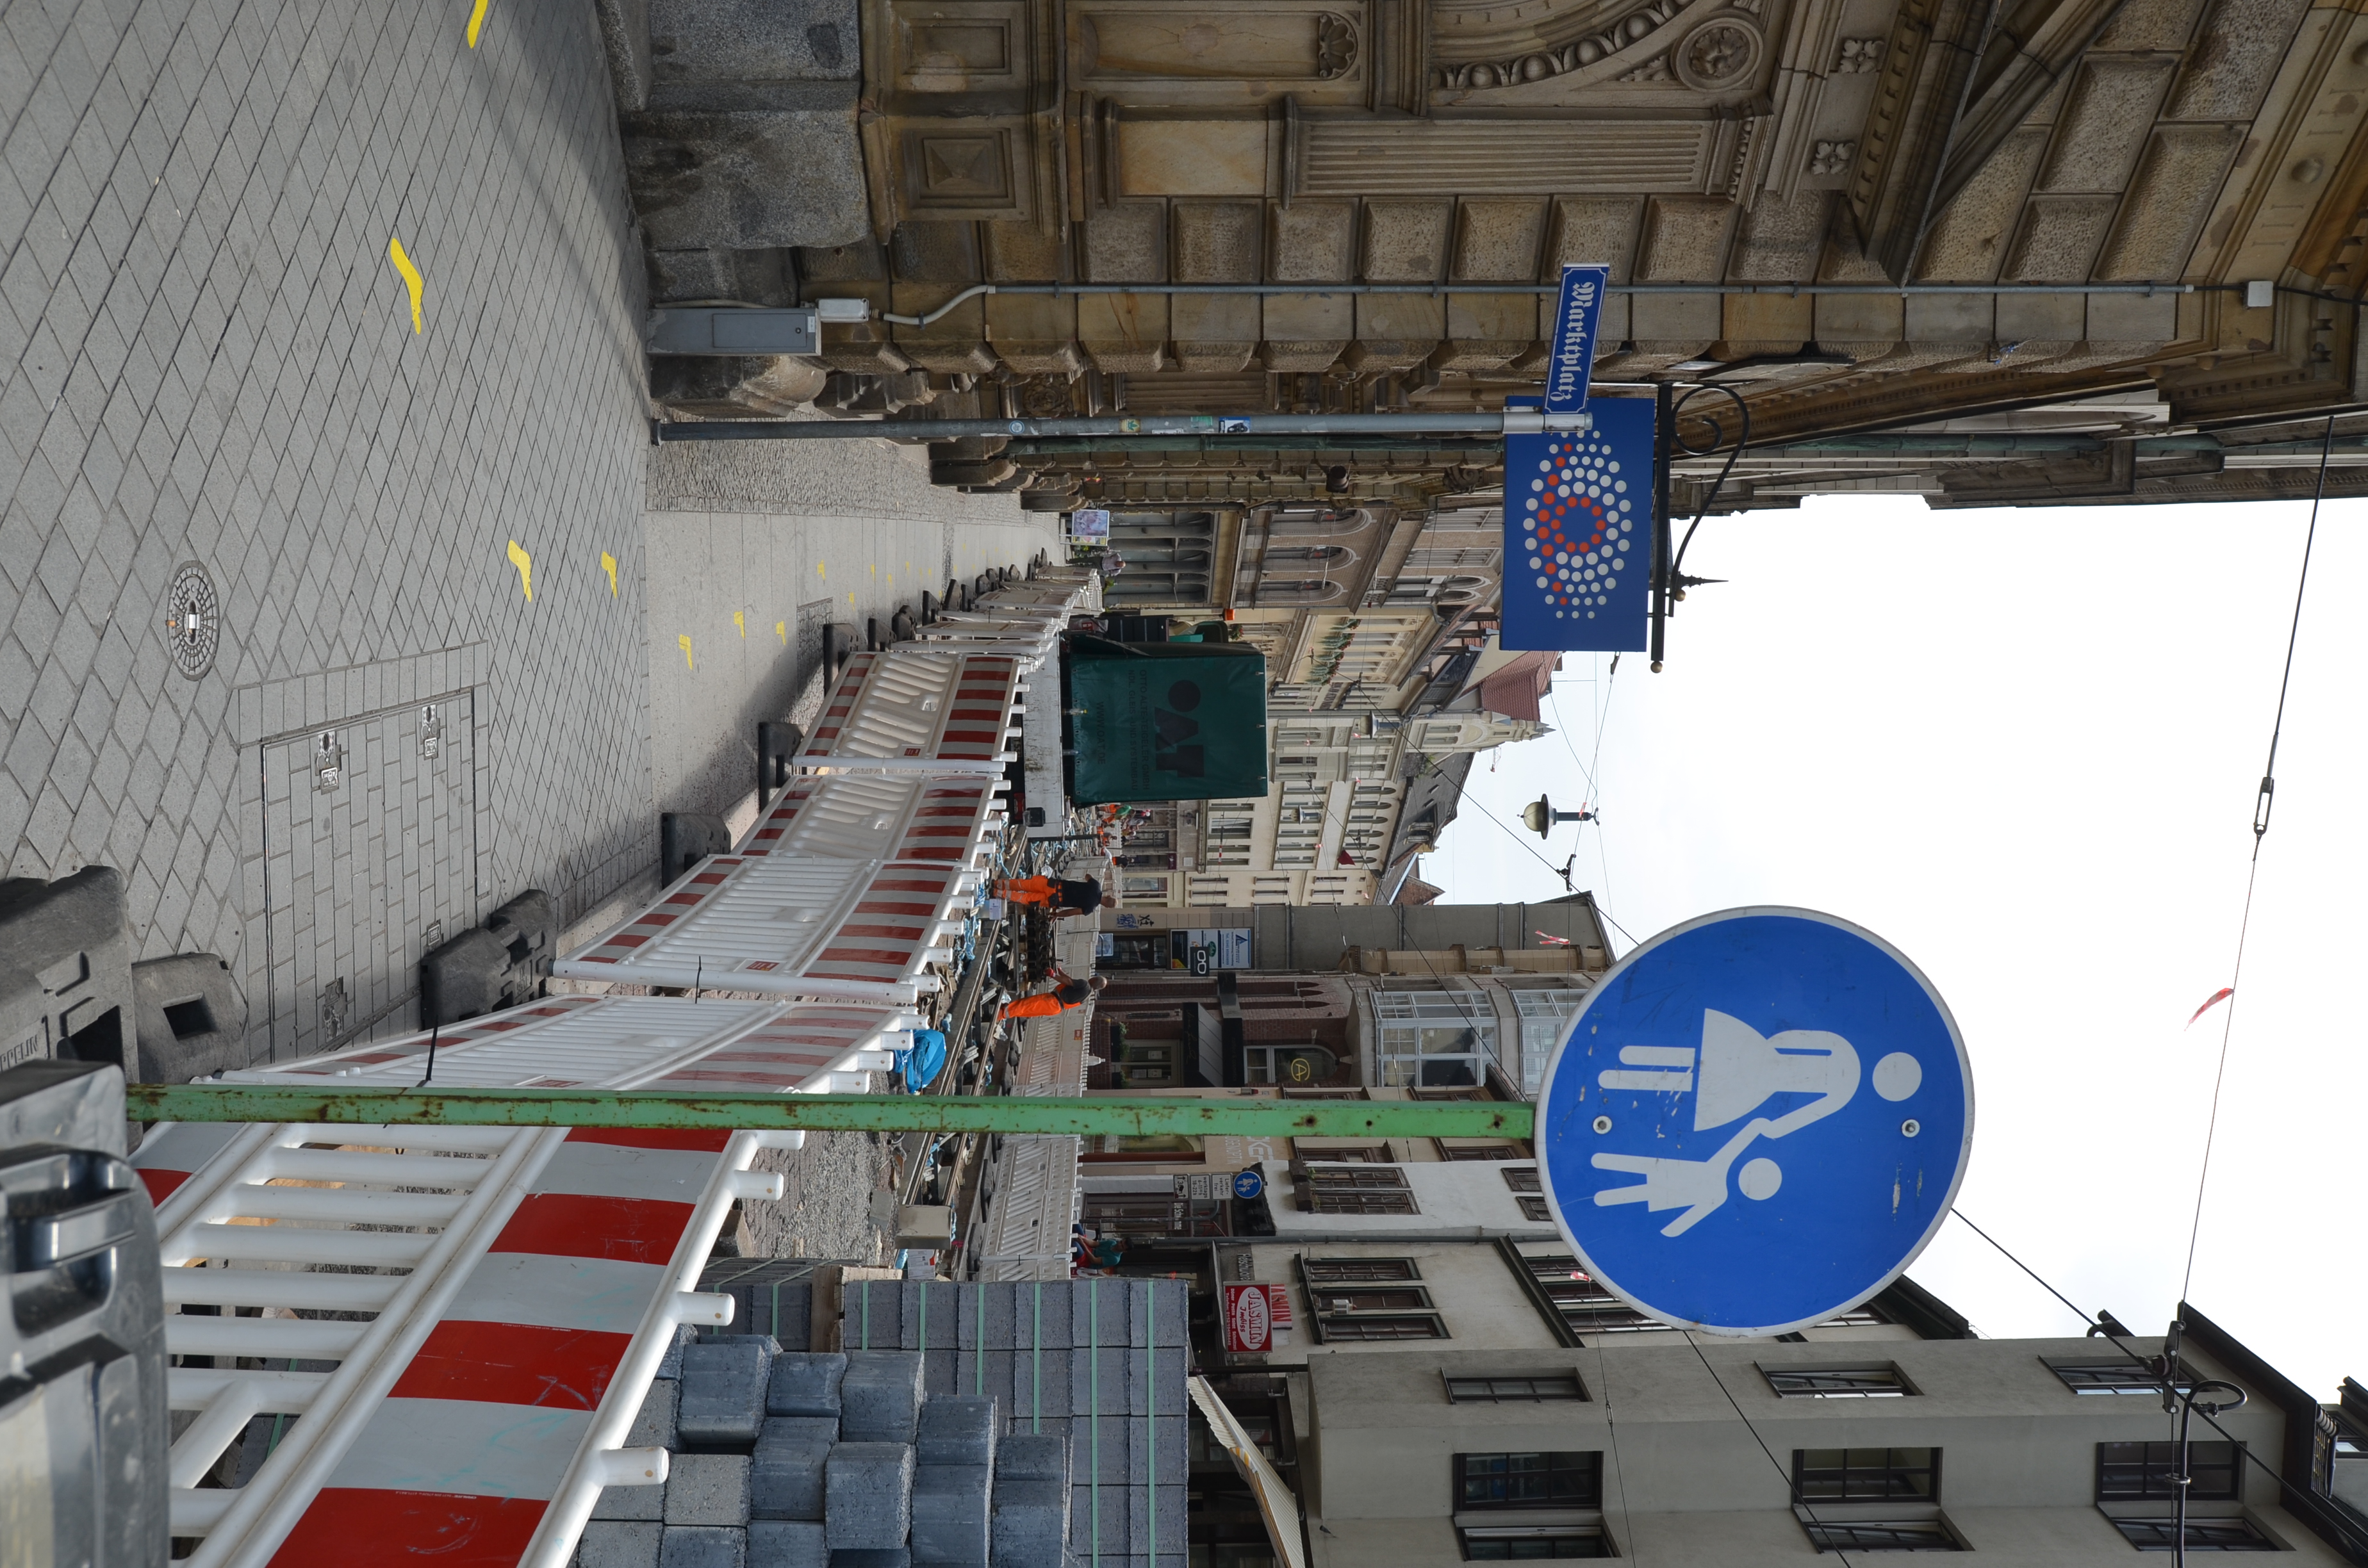 Das Foto im Hochformat zeigt die Schmeerstraße in Halle, auf der im Moment die Gleise erneuert sind. Lediglich für Fußgänger*innen ist die Straße freigegeben, was ein großes Fußgängerschild im Vordergrund anzeigt.